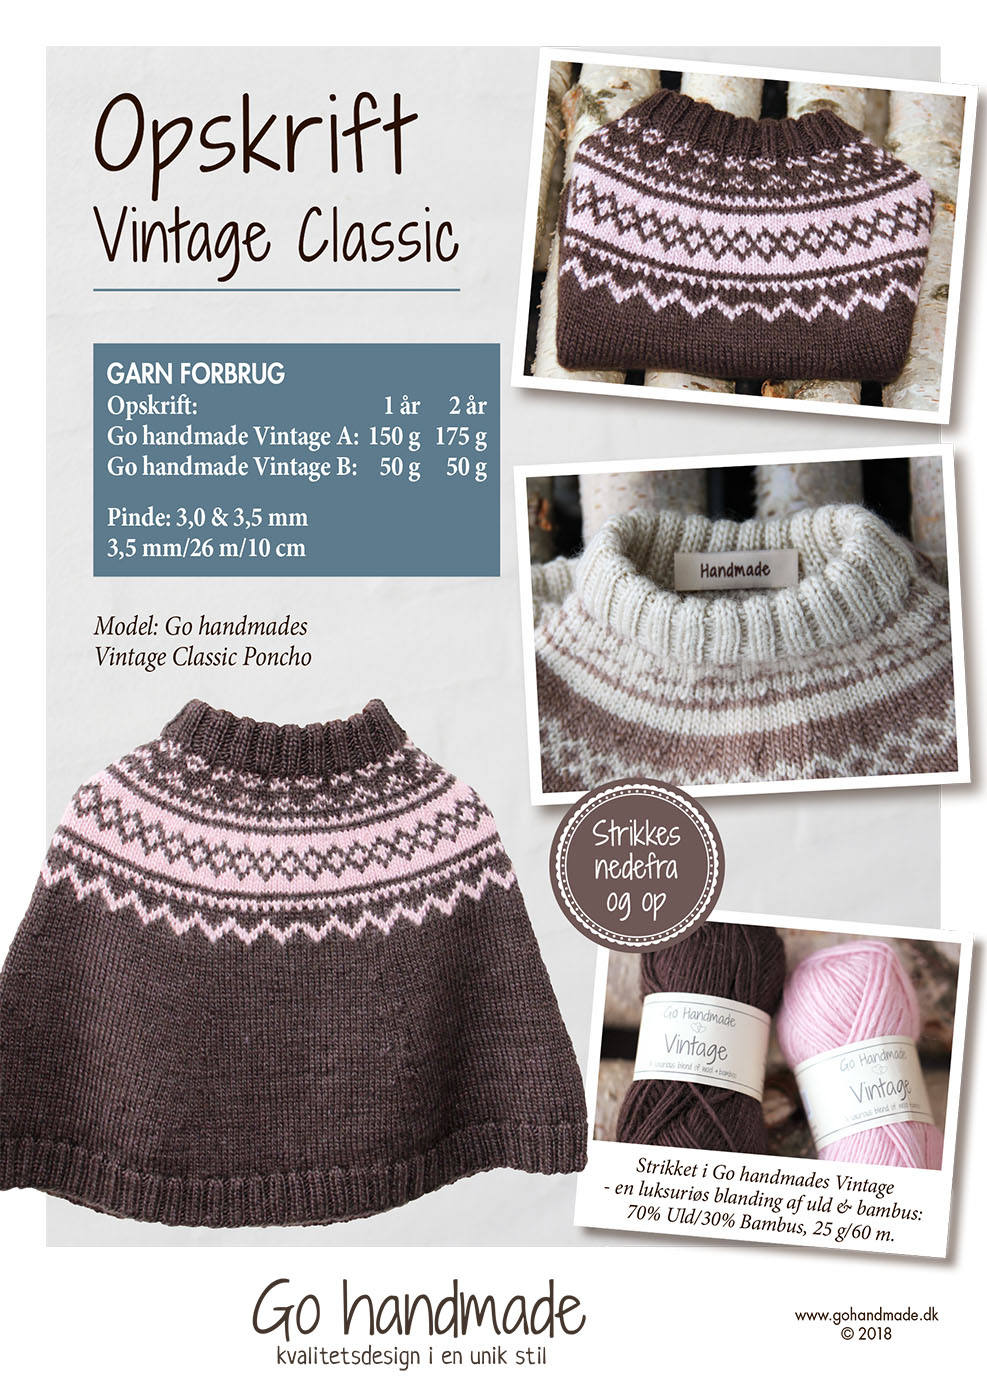 flyde generøsitet nikkel Vintage Classic Poncho - DK - Baby clothes - Go handmade